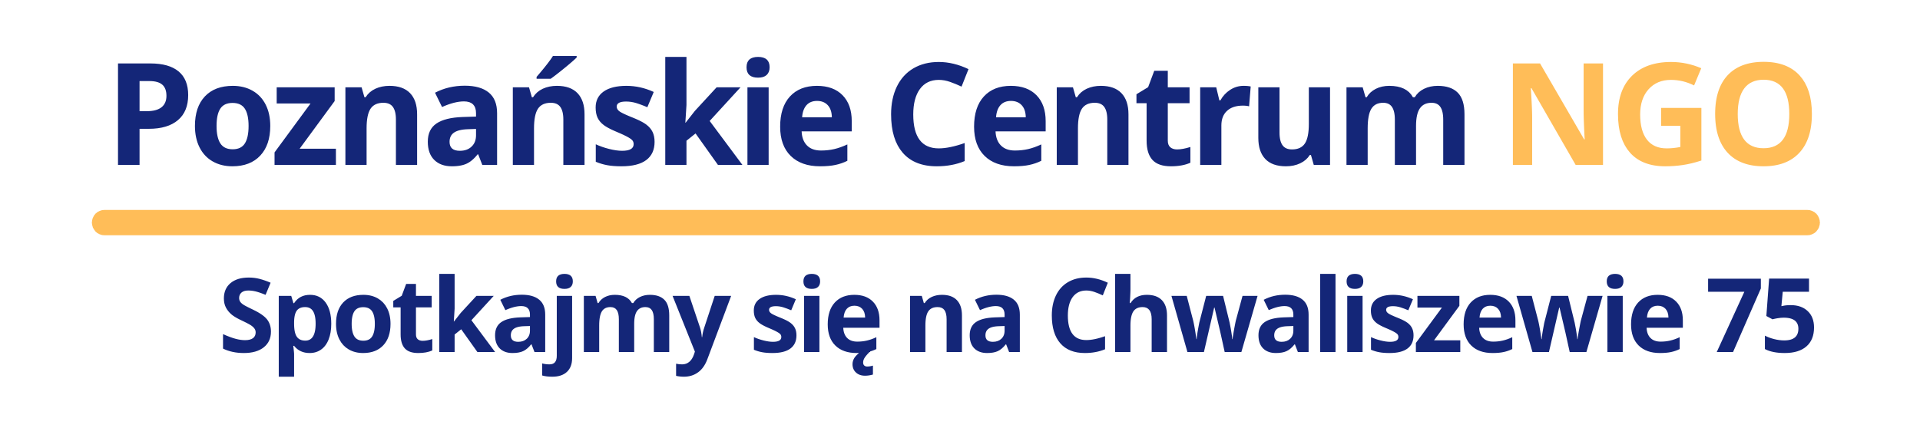 Napis o treści Poznańskie Centrum NGO. Pod nim pomarańczowa linia, a pod nią napis o treści spotkajmy się na Chwaliszewie 75.